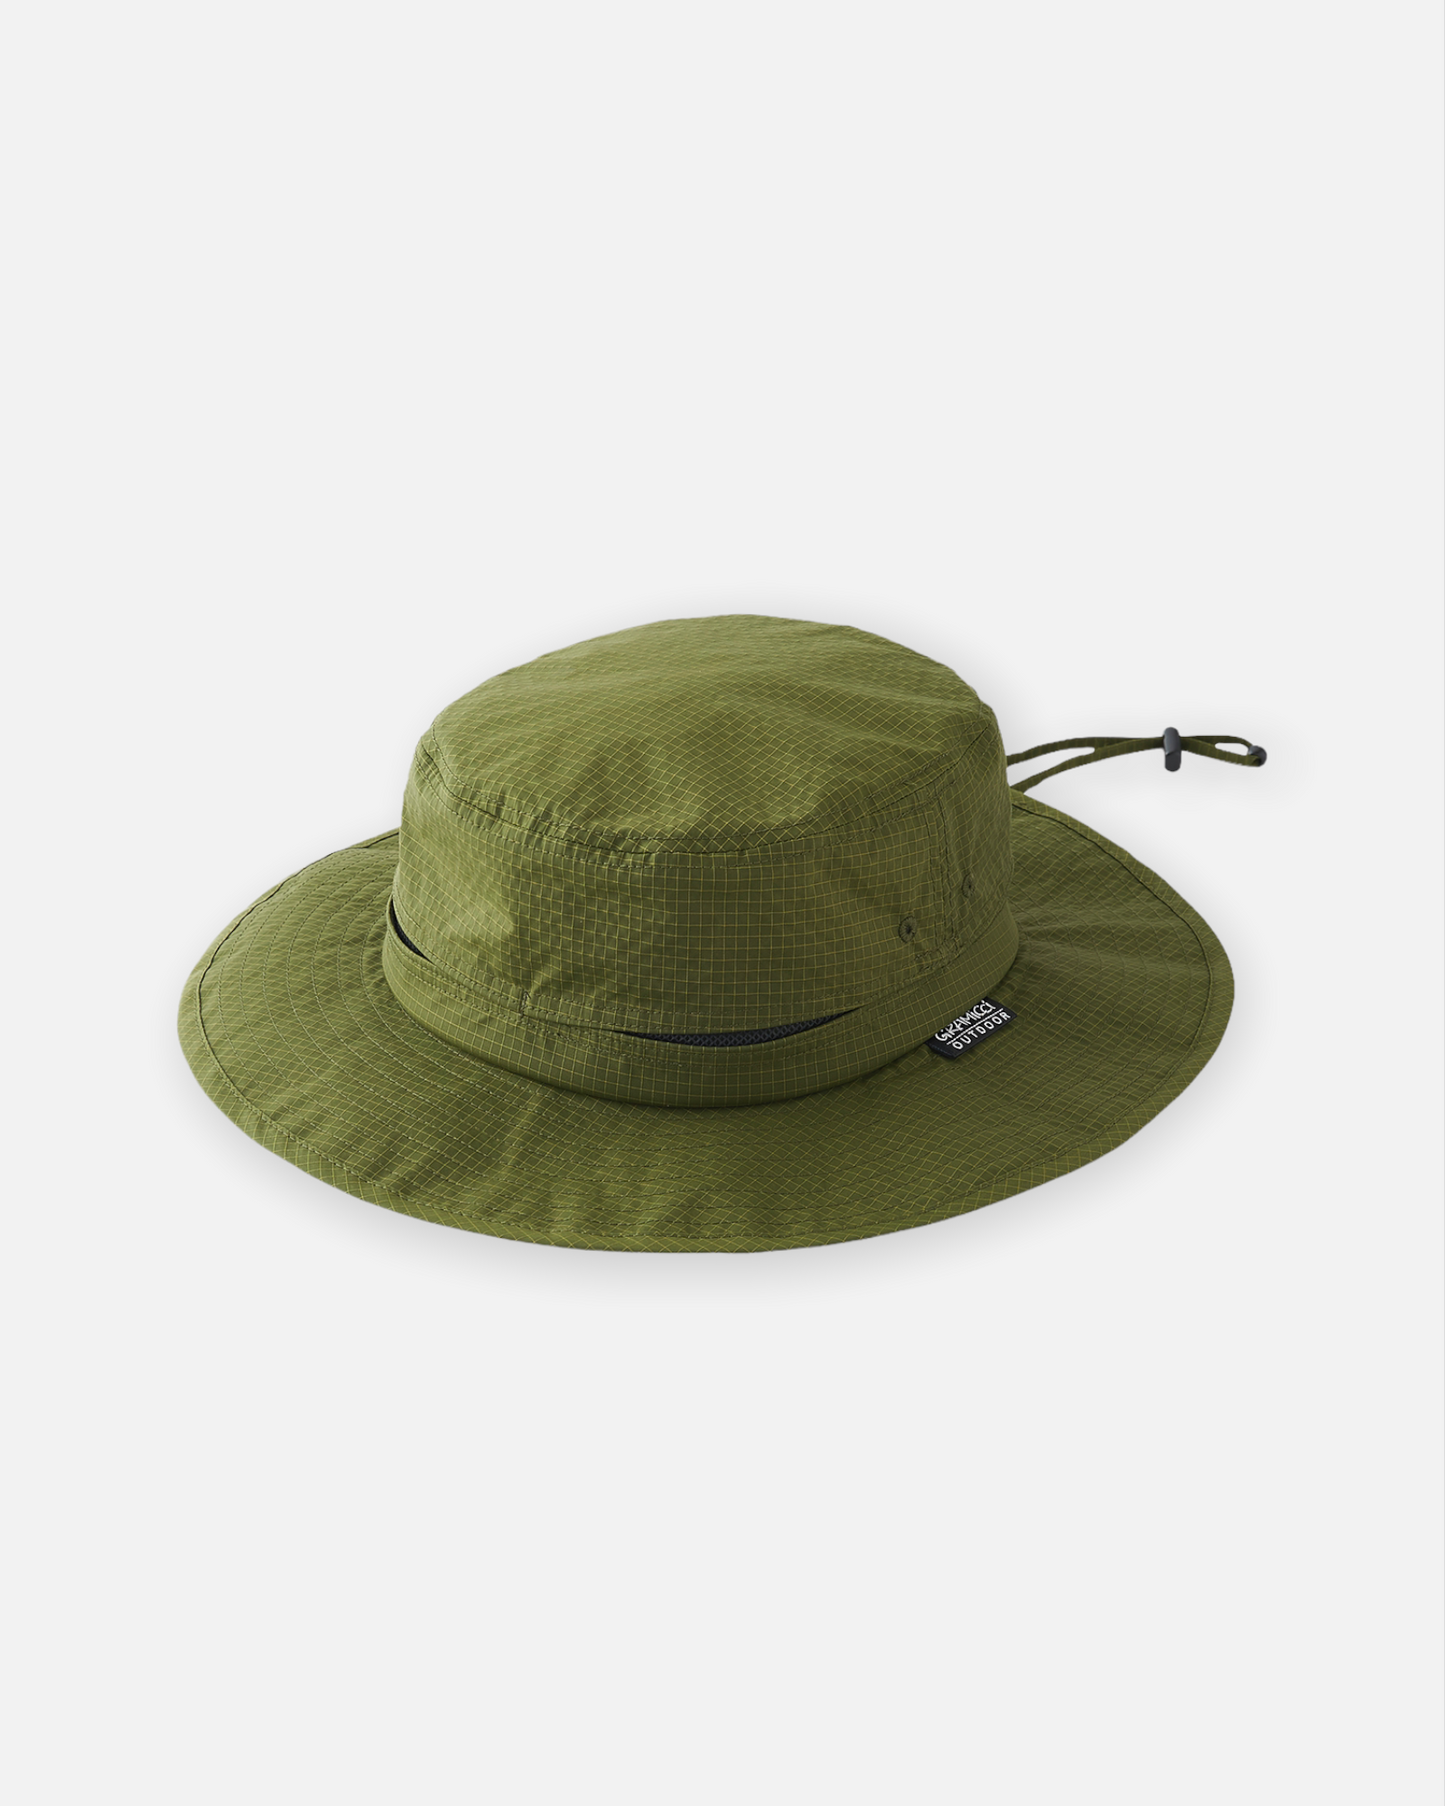 UTILITY BOONIE HAT (ARMY GREEN)